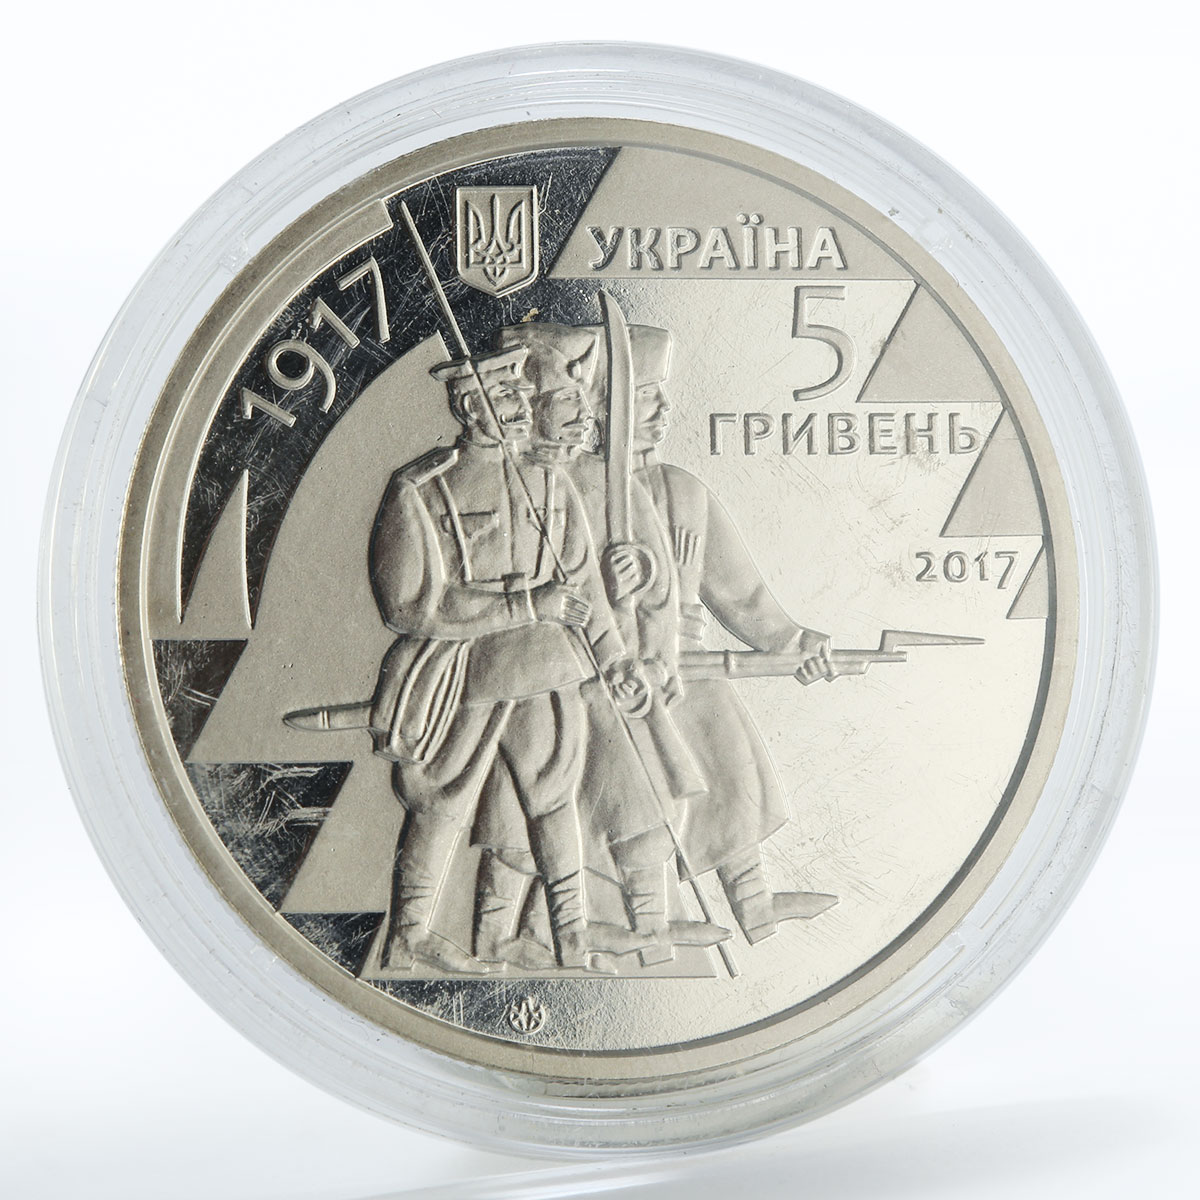 Ukraine 5 Hryvnias 100 years First regiment of B. Khmelnitsky nickel coin 2017